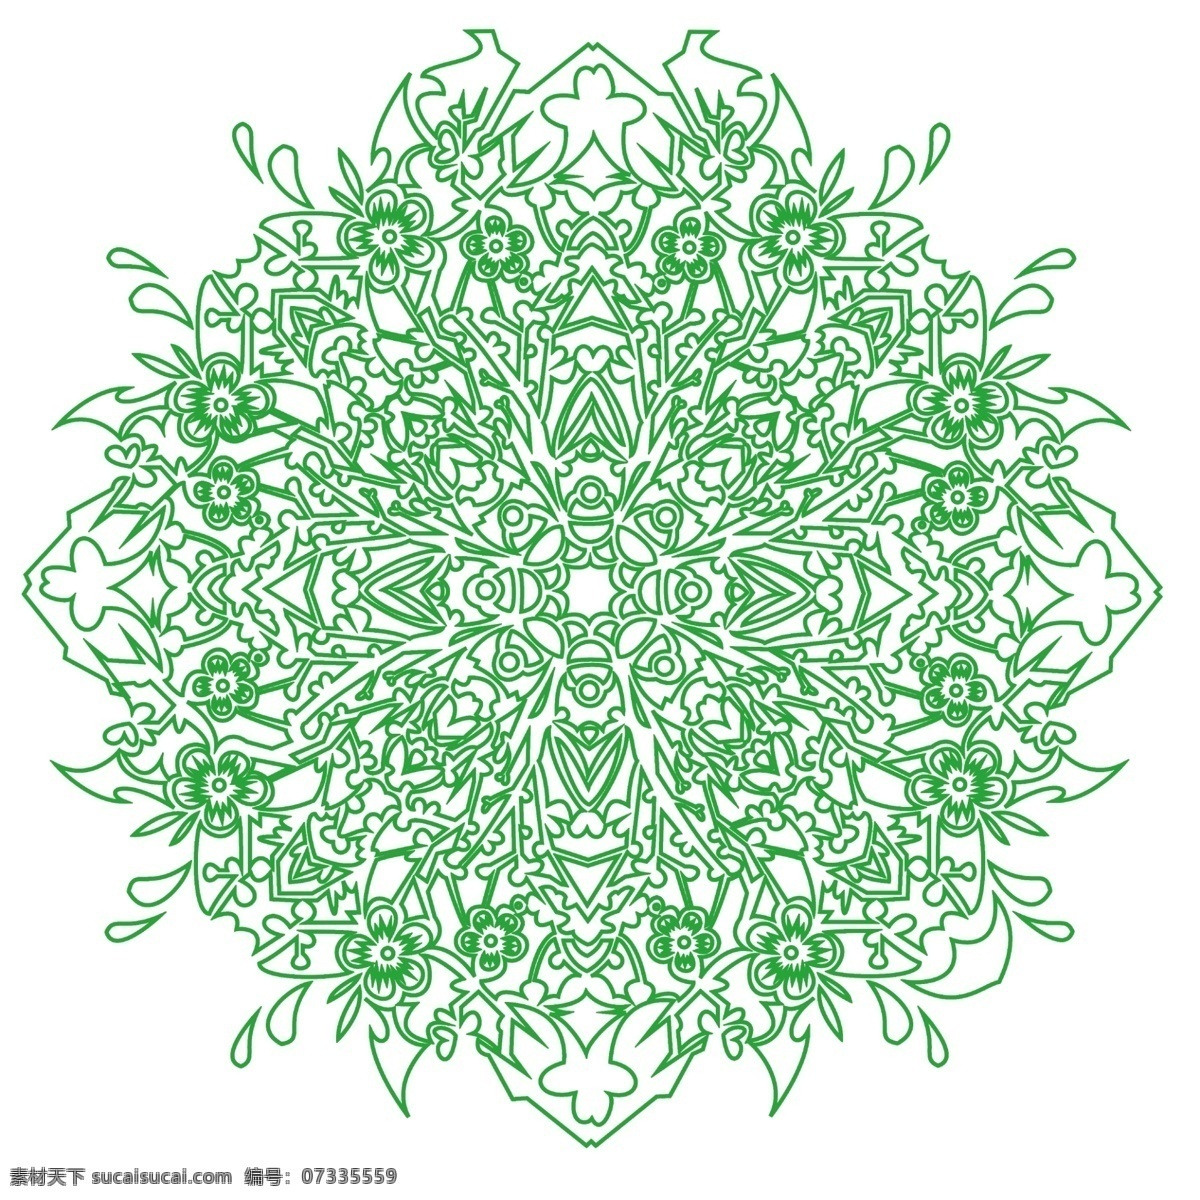 寒梅 梅树 组 合成 团花 图纹 梅花 树枝 传统纹样 四边形 有圆心